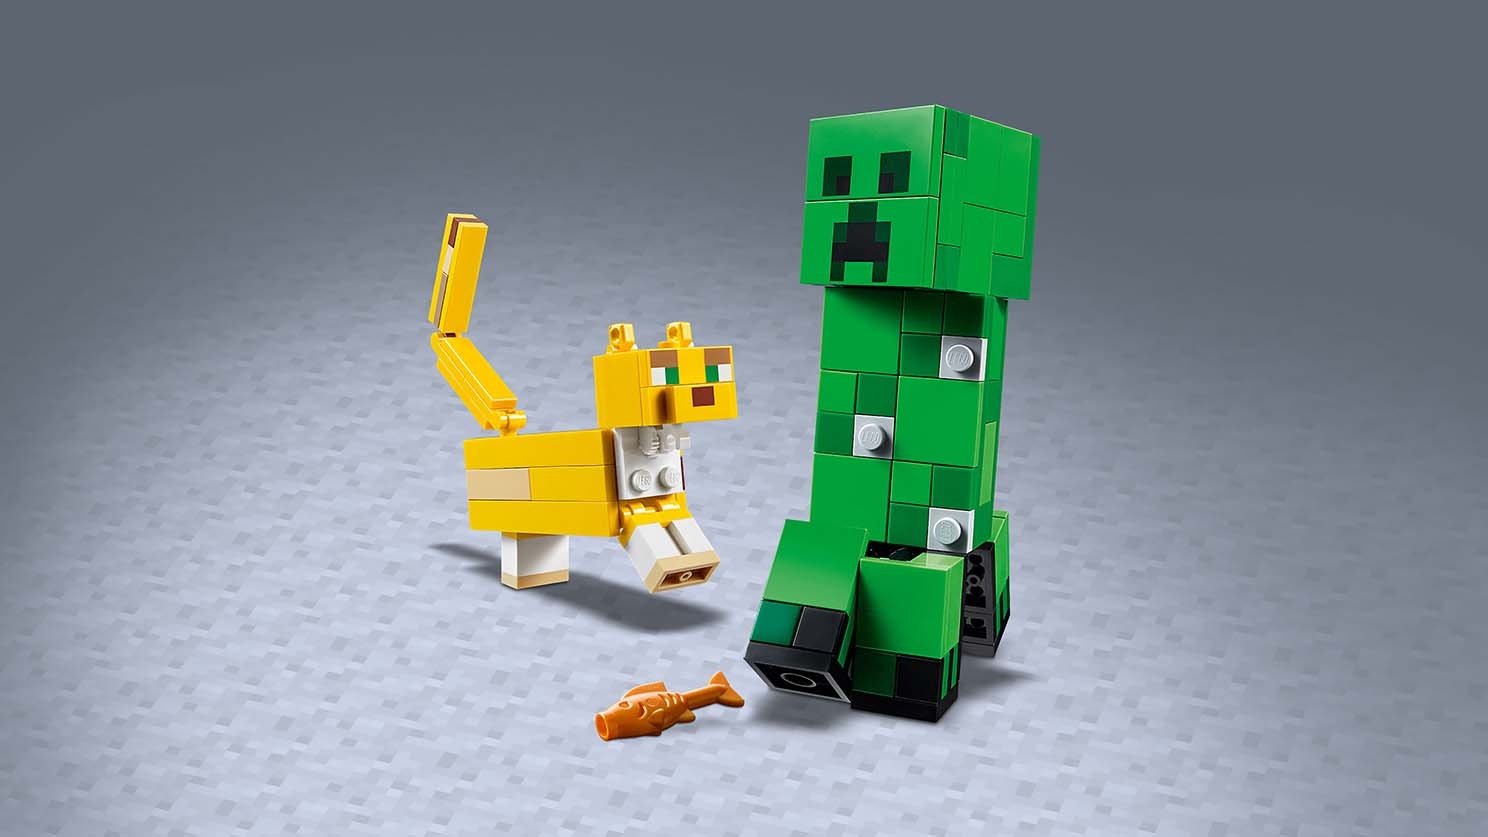 マインクラフト ビッグフィグ クリーパー™ とヤマネコ - ビデオ - LEGO